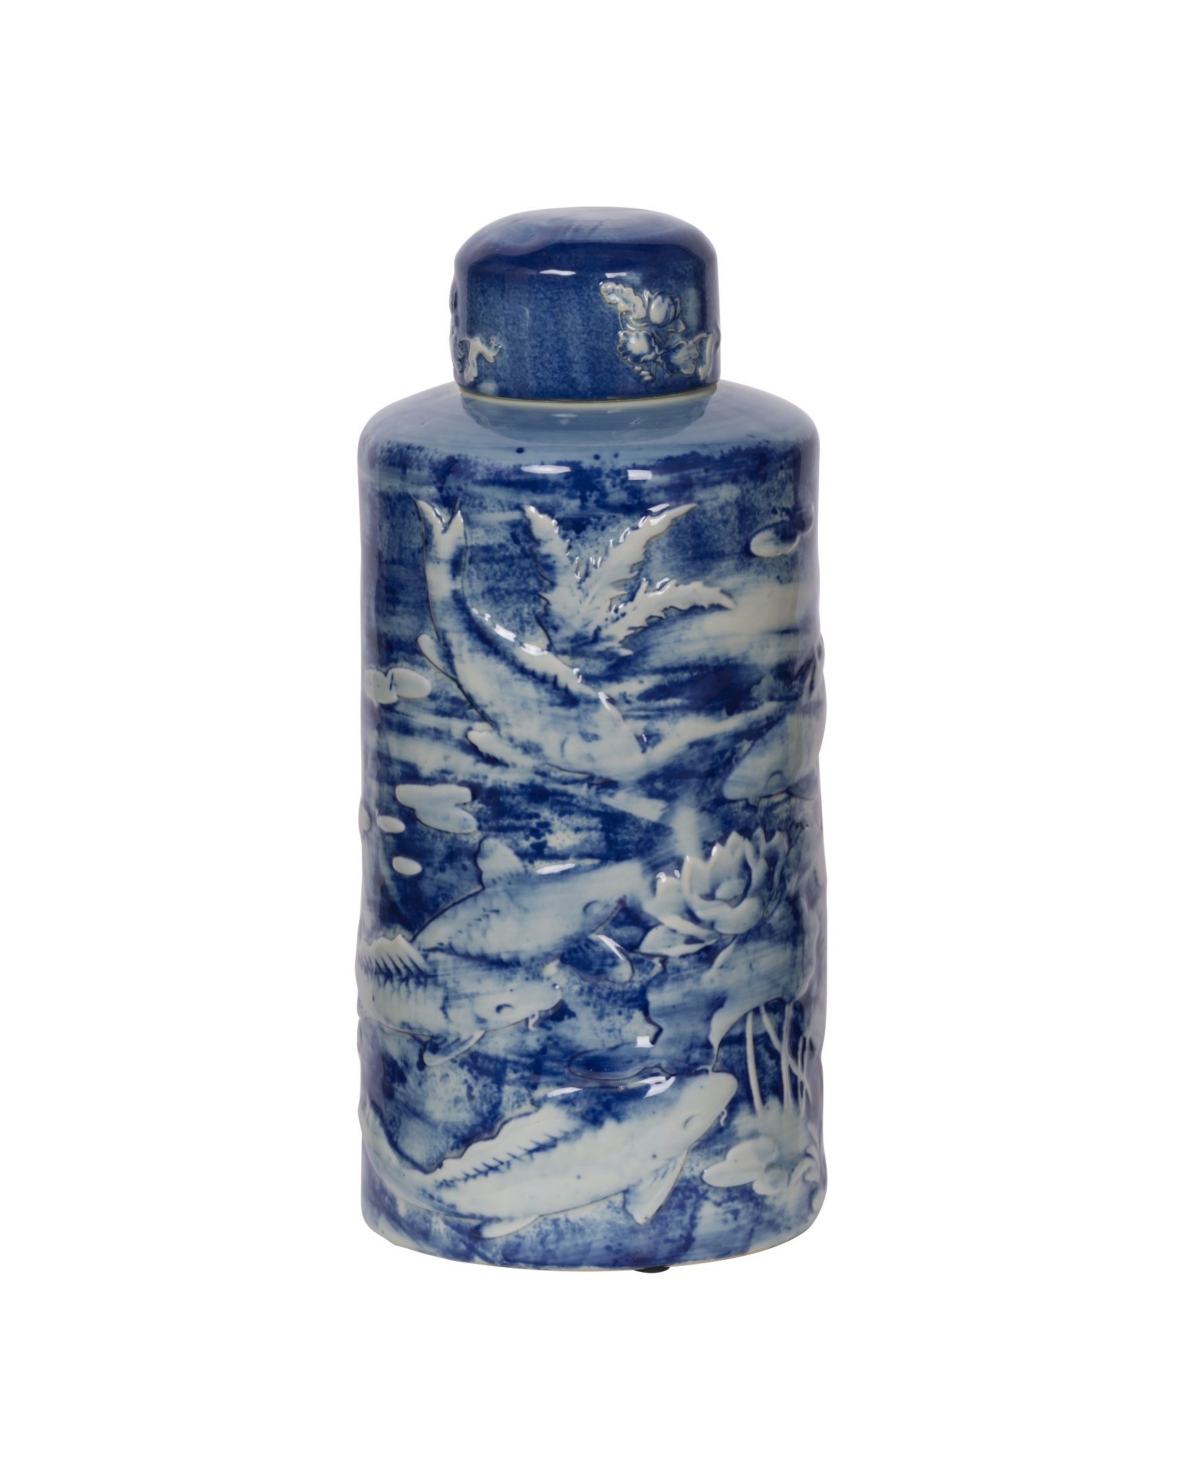 Ab Home Oan Lidded Decorative Jar In Blue